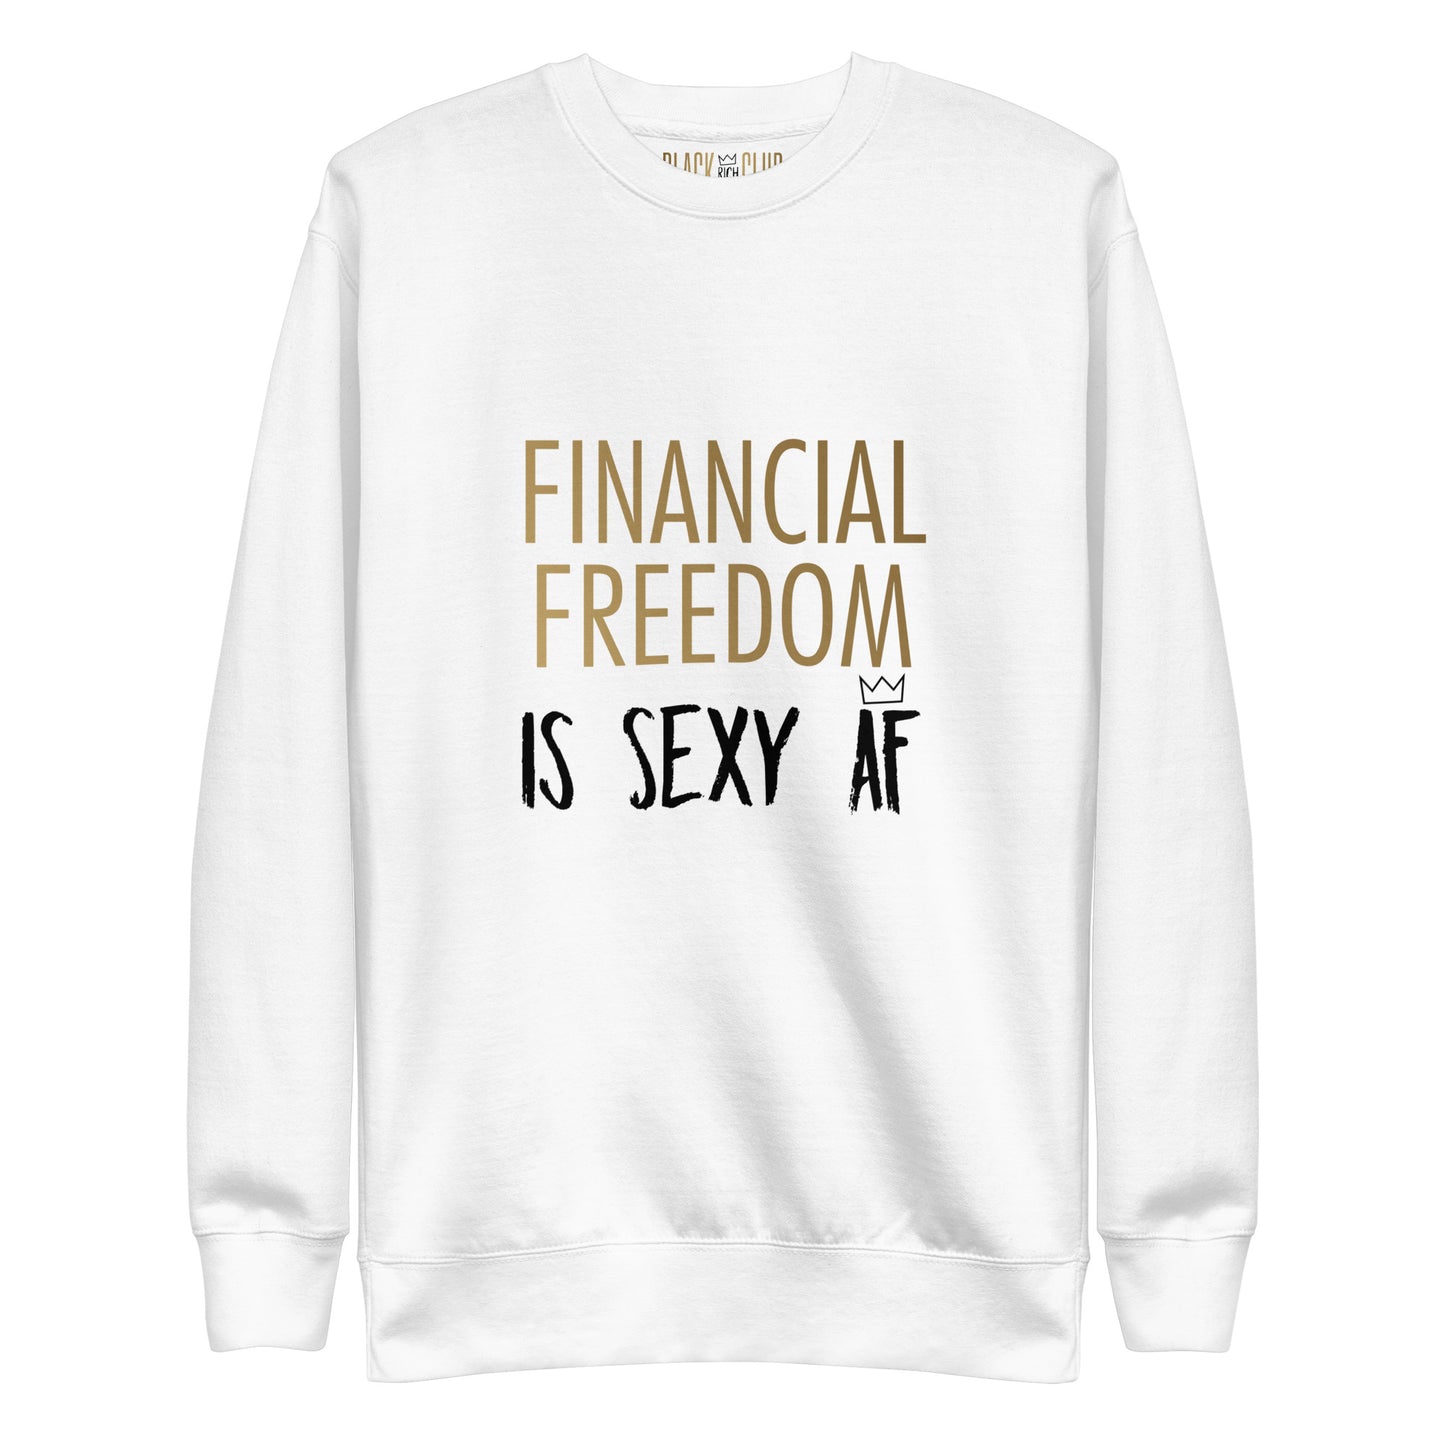 Black Rich Club "Financial Freedom Is Sexy AF" Unisex Sweatshirt